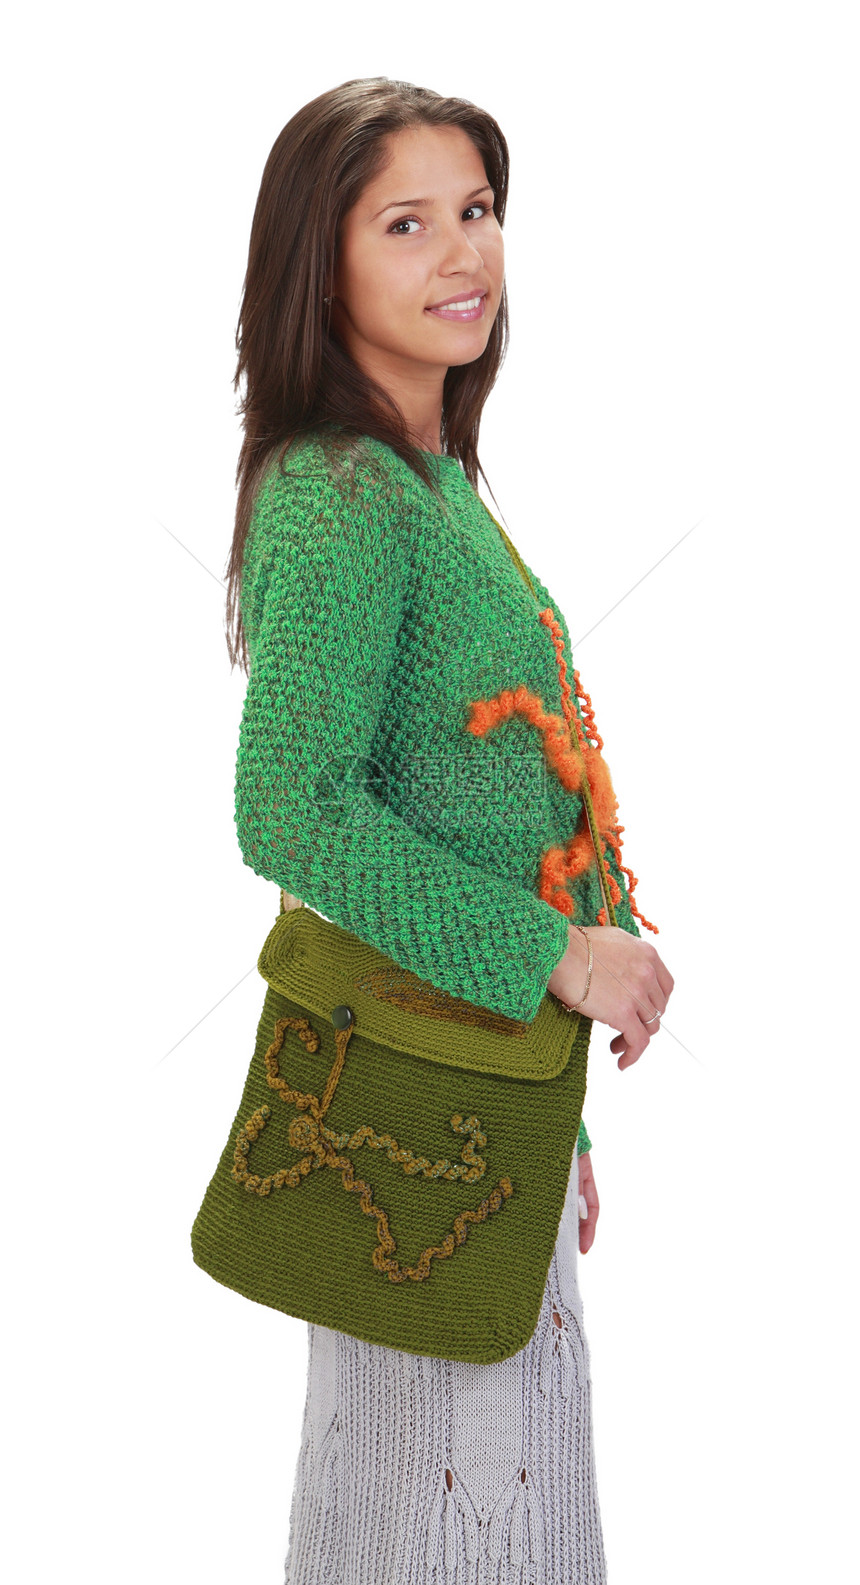 青年妇女蜘蛛针织品手工化妆箱手提包橙子绿色奇思妙想裙子针织图片